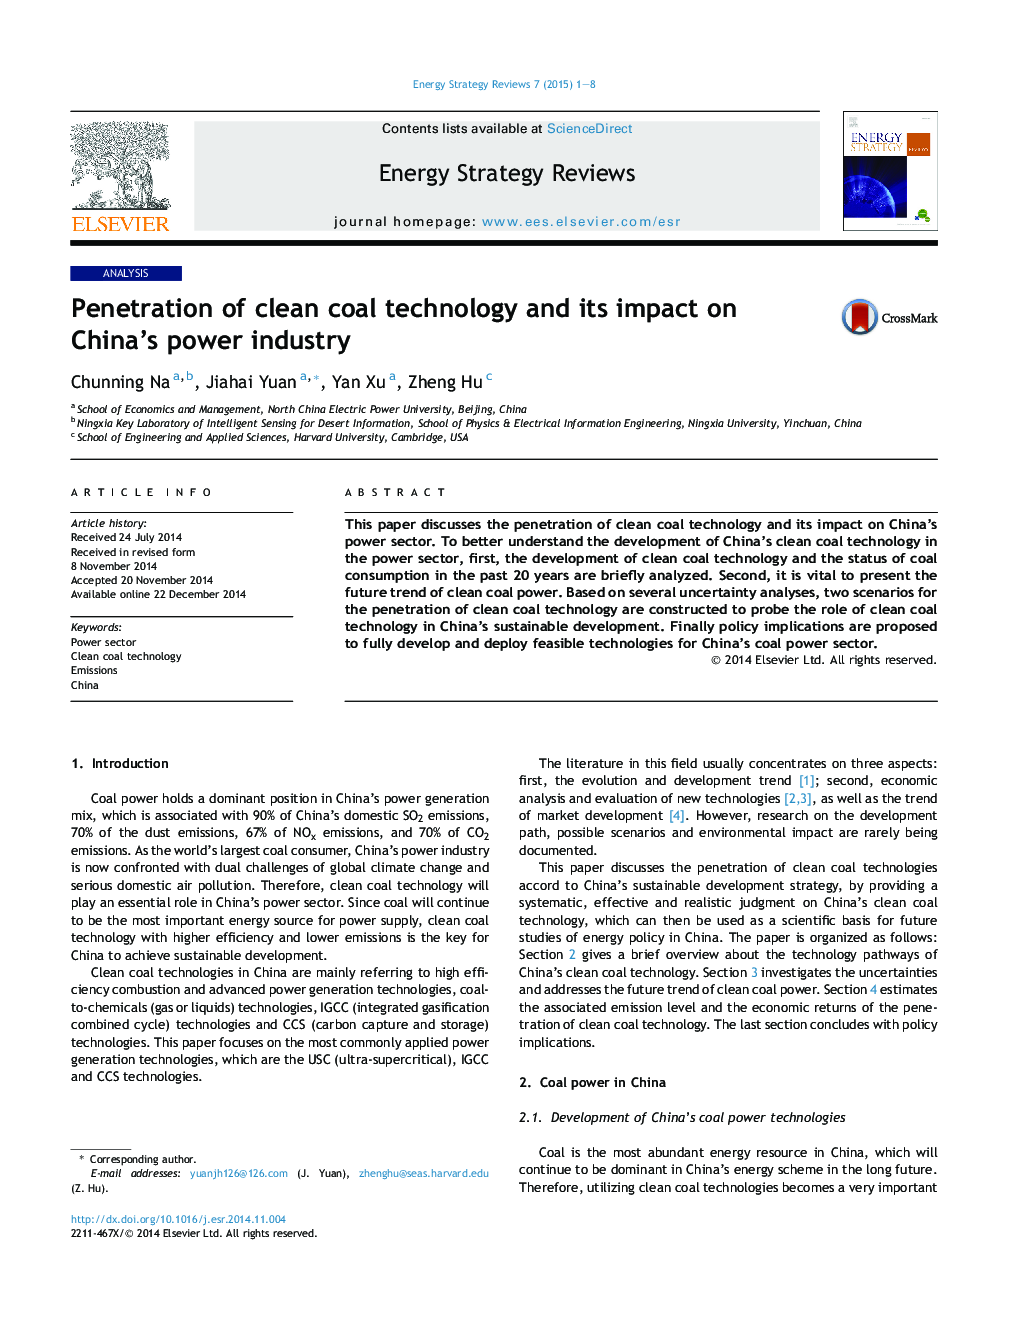 نفوذ تکنولوژی زغال سنگ پاک و تاثیر آن بر صنعت برق چین 